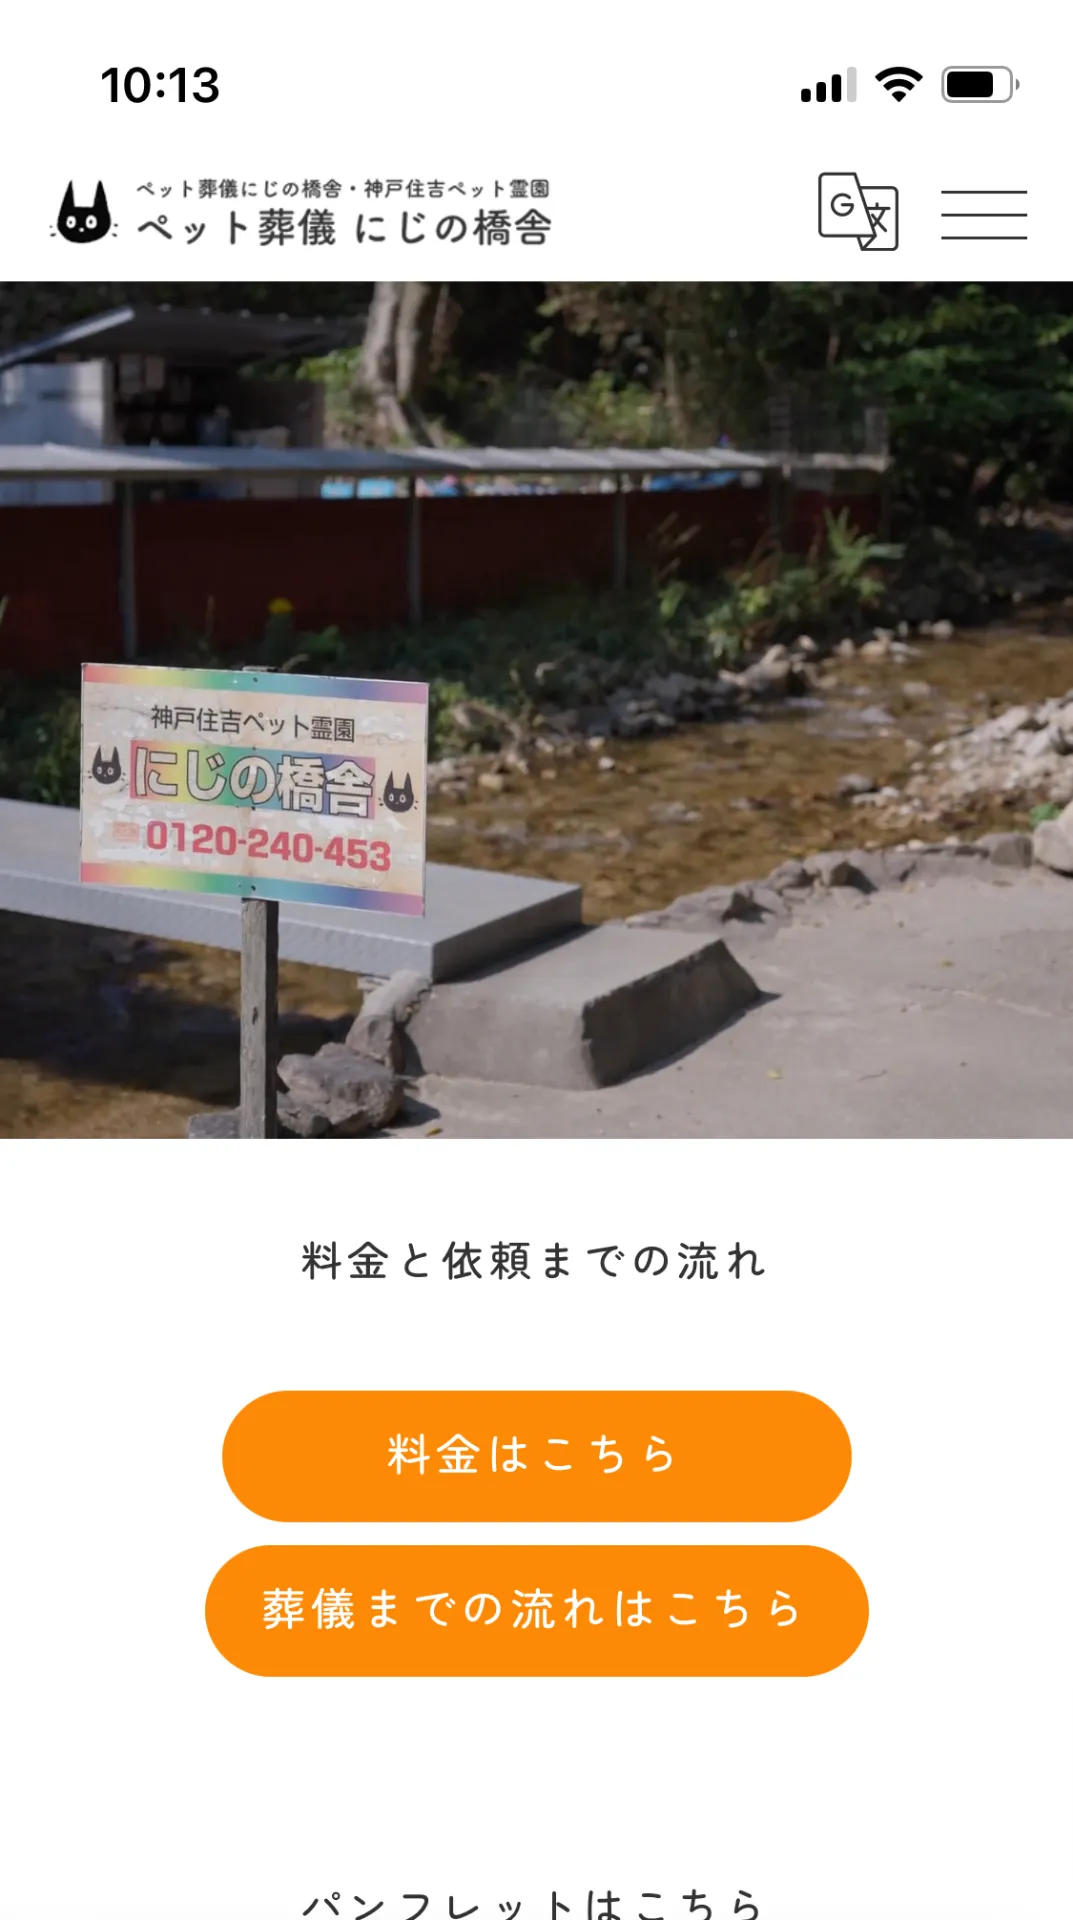 にじの橋舎 神戸住吉ペット霊園のホームページがリニューアルされました。ペット葬儀、火葬についてわかりやすく解説しています。